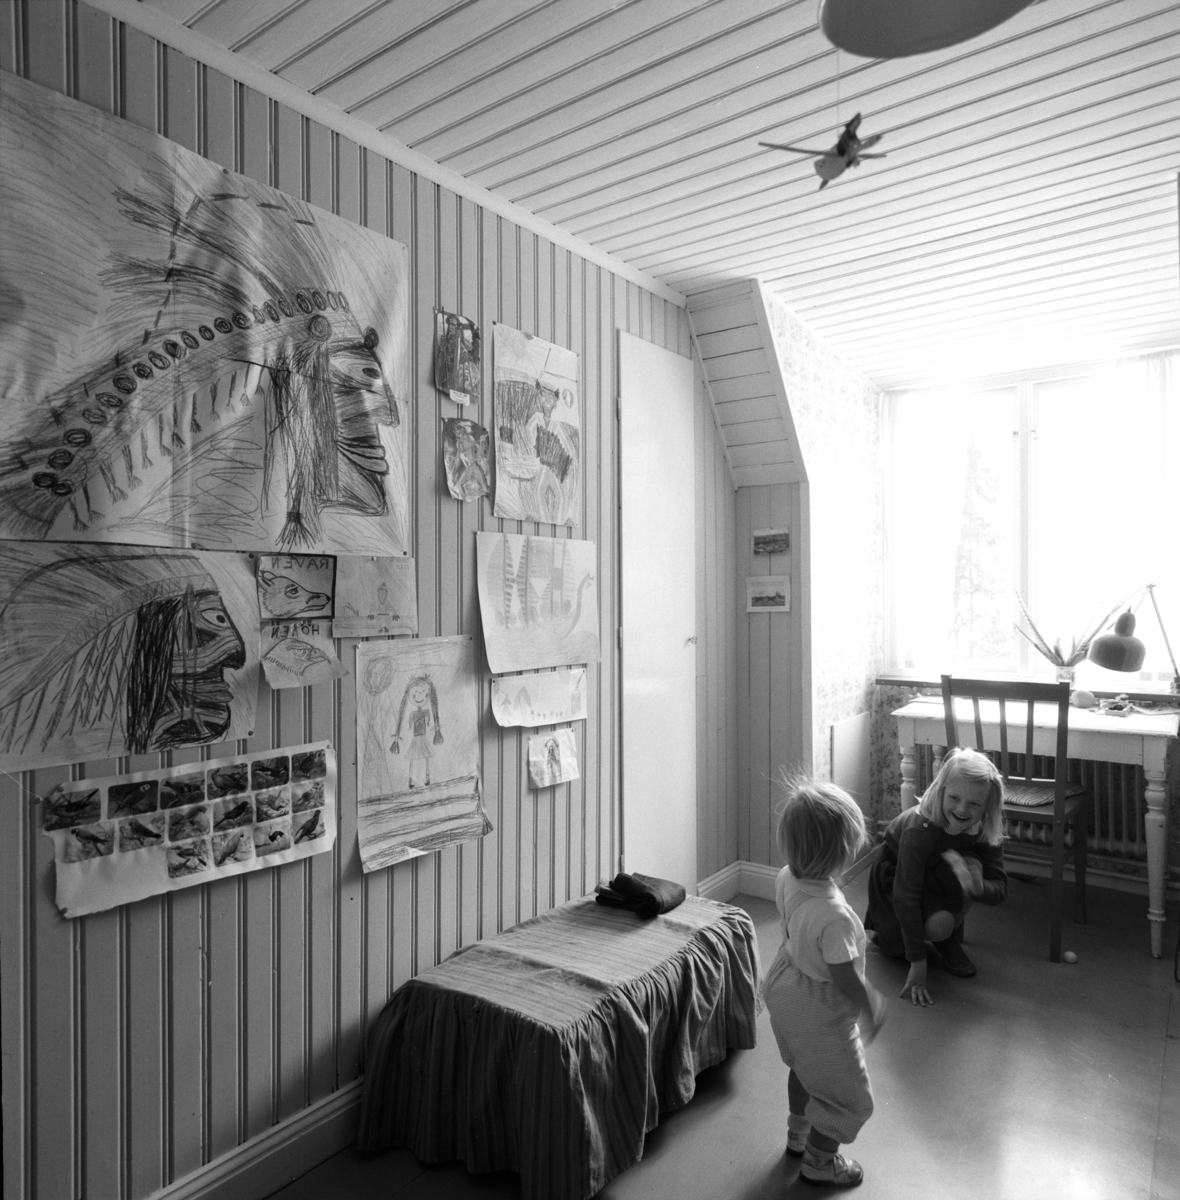 villa Ahlgren
Interiör av barnkammare med två små barn, på väggen barnteckningar.